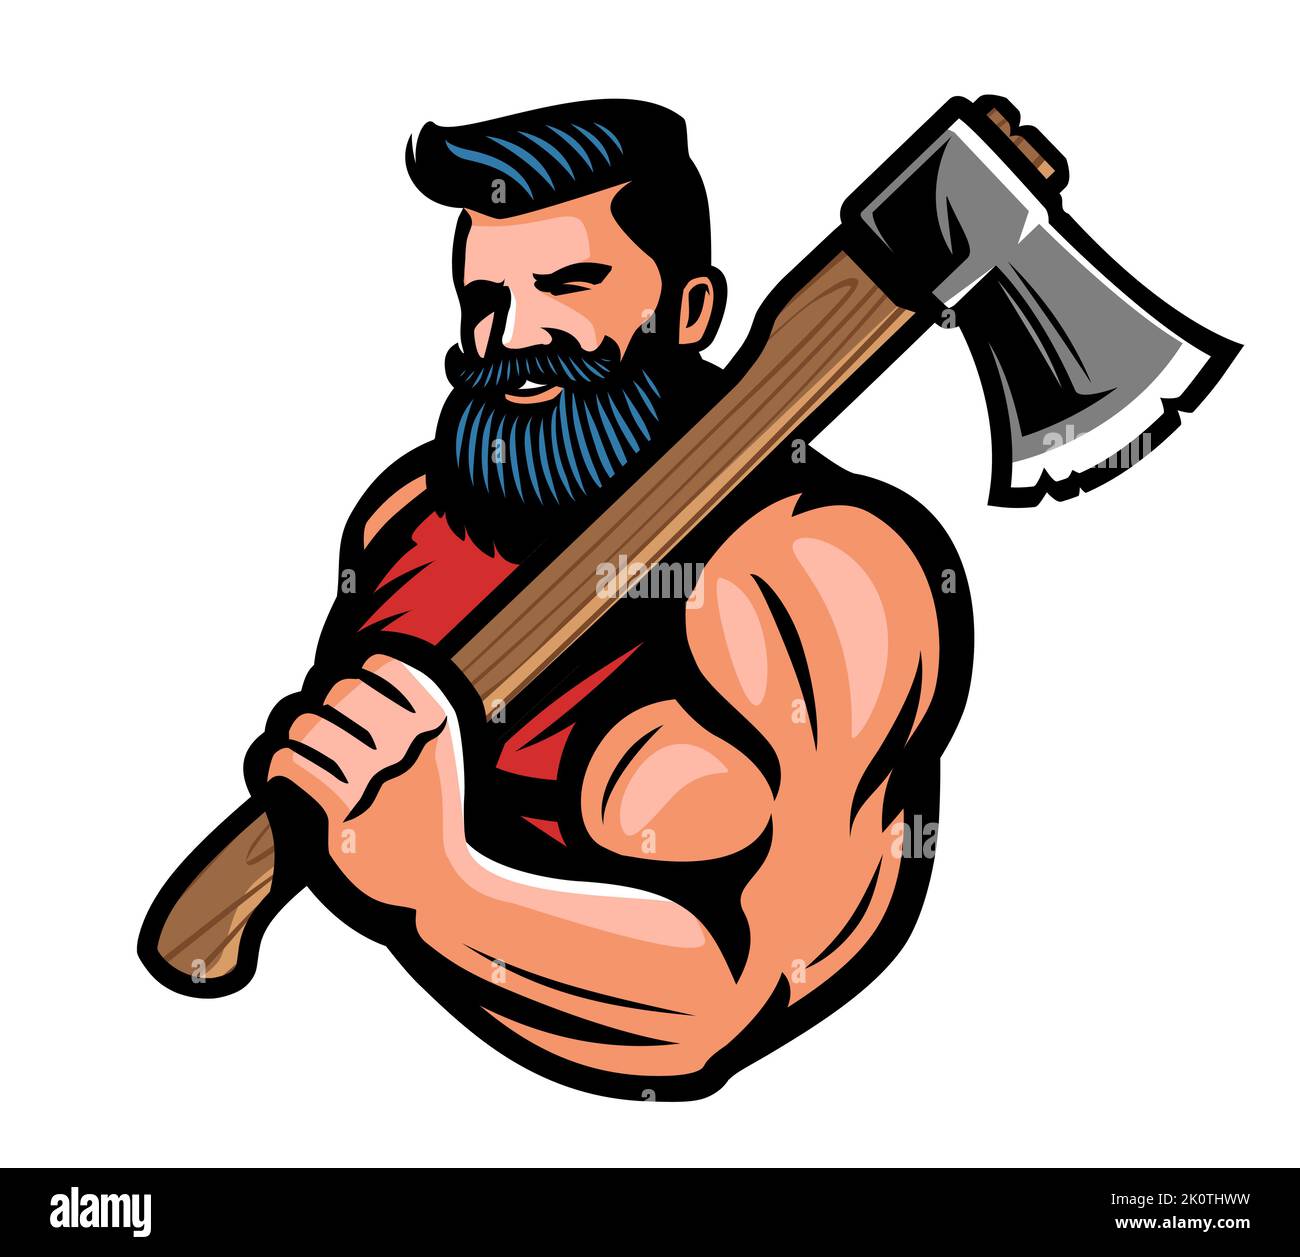 Leñador barbado muscular con hacha grande en la mano. Guerrero o vikingo con emblema de hacha de batalla. Ilustración vectorial de la mascota Ilustración del Vector